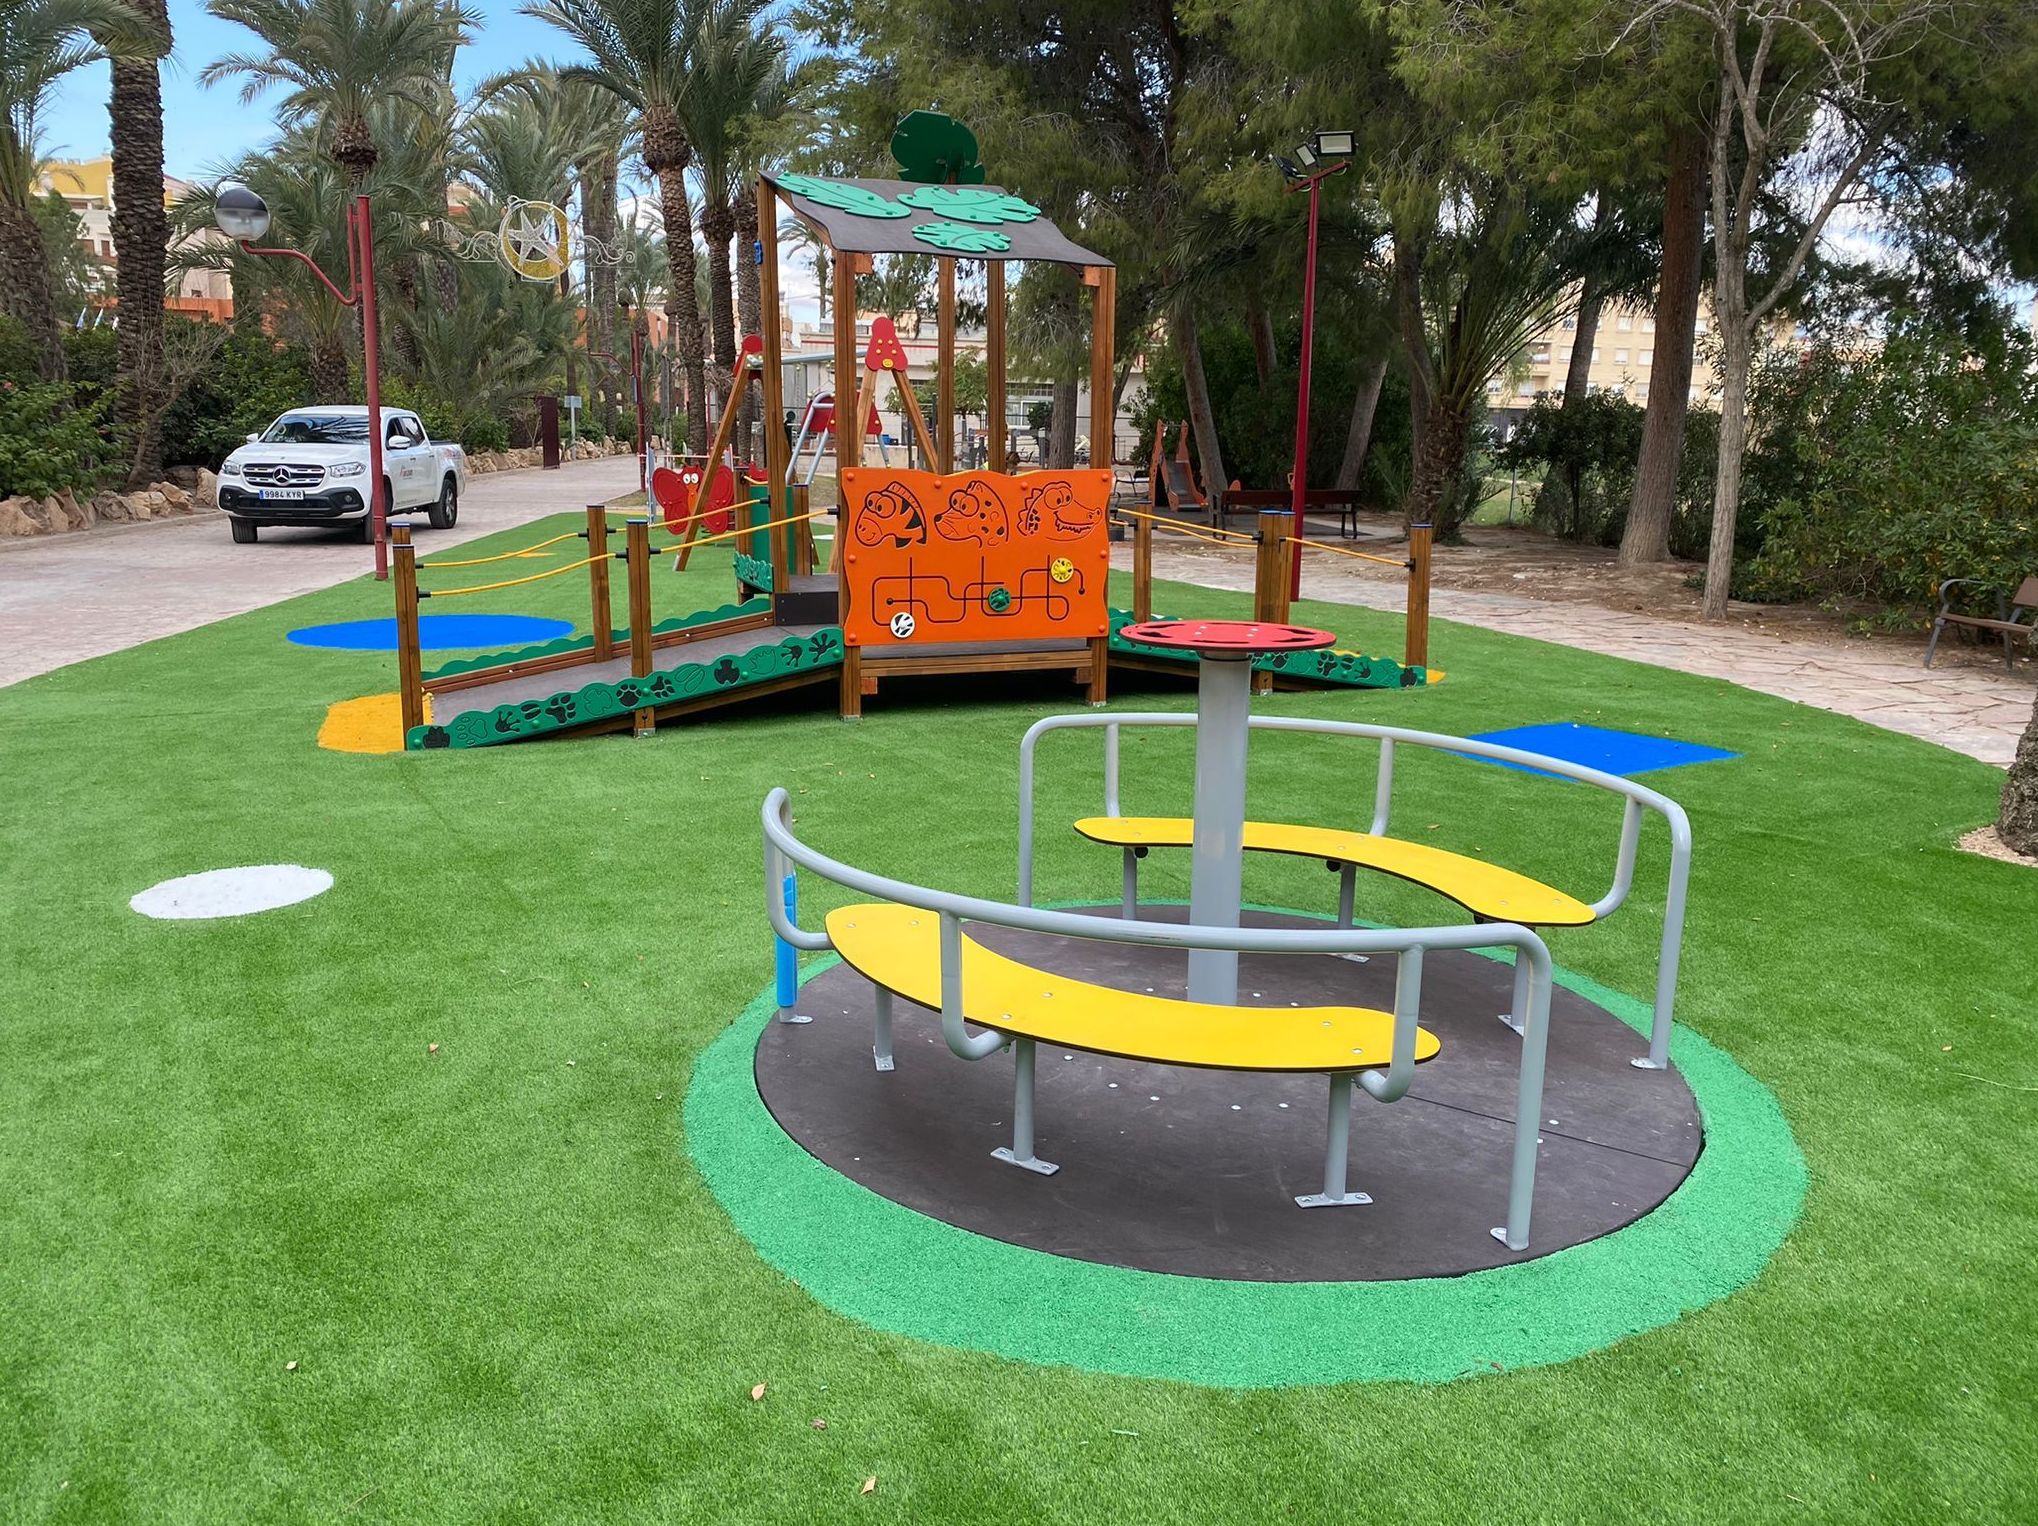 Gran Carrusel adaptado para el acceso de sillas de ruedas, Parque Infantil Inclusivo, Albatera